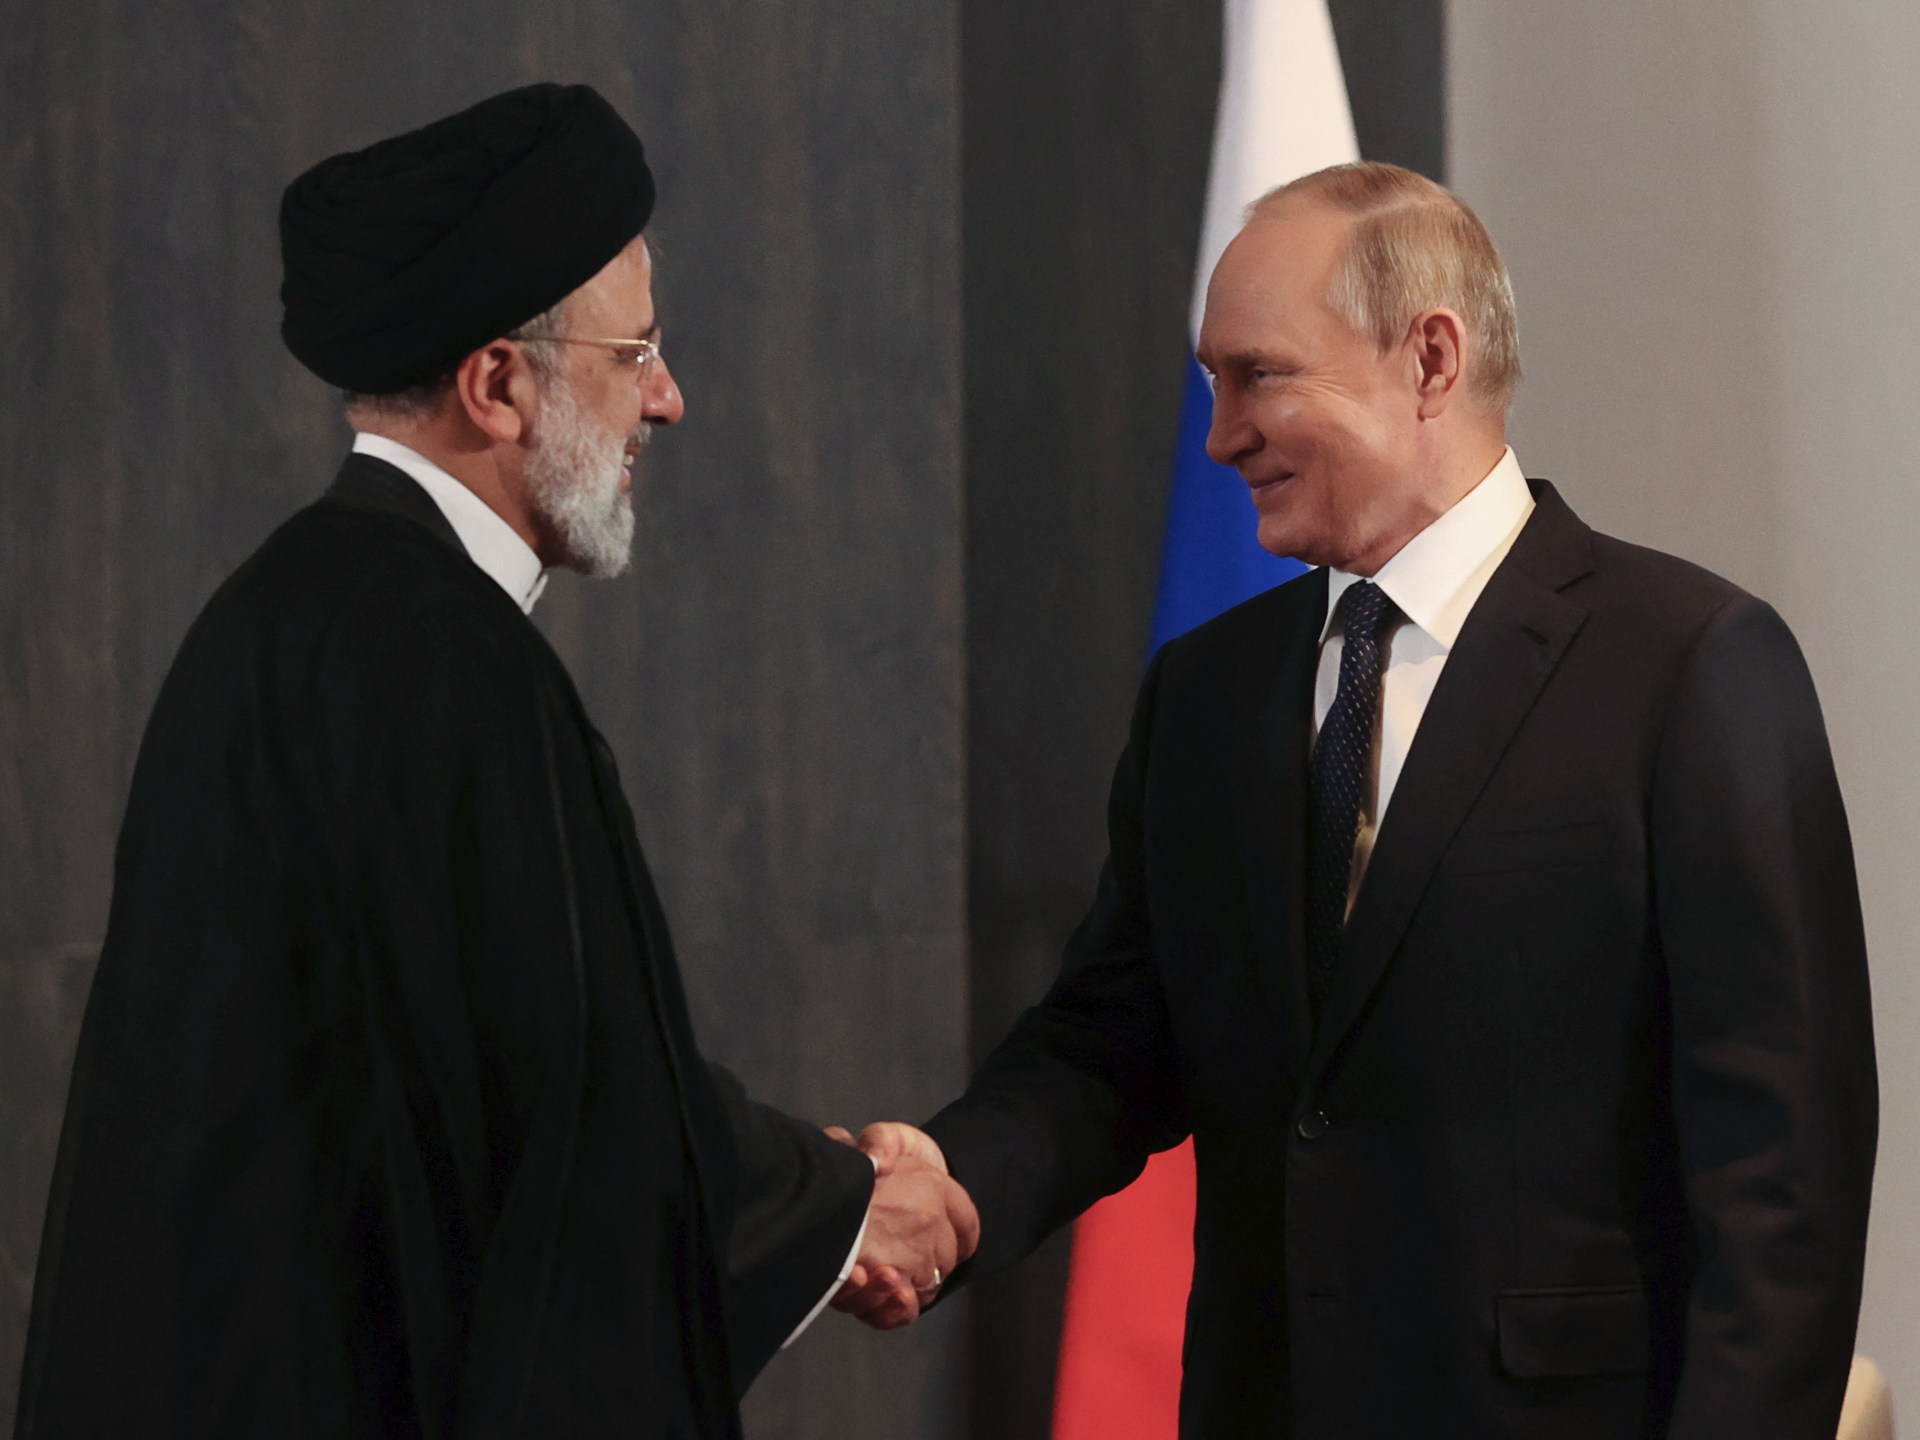 Putin a můj prezident diskutují o prohloubení vztahů mezi Ruskem a Íránem |  Zprávy